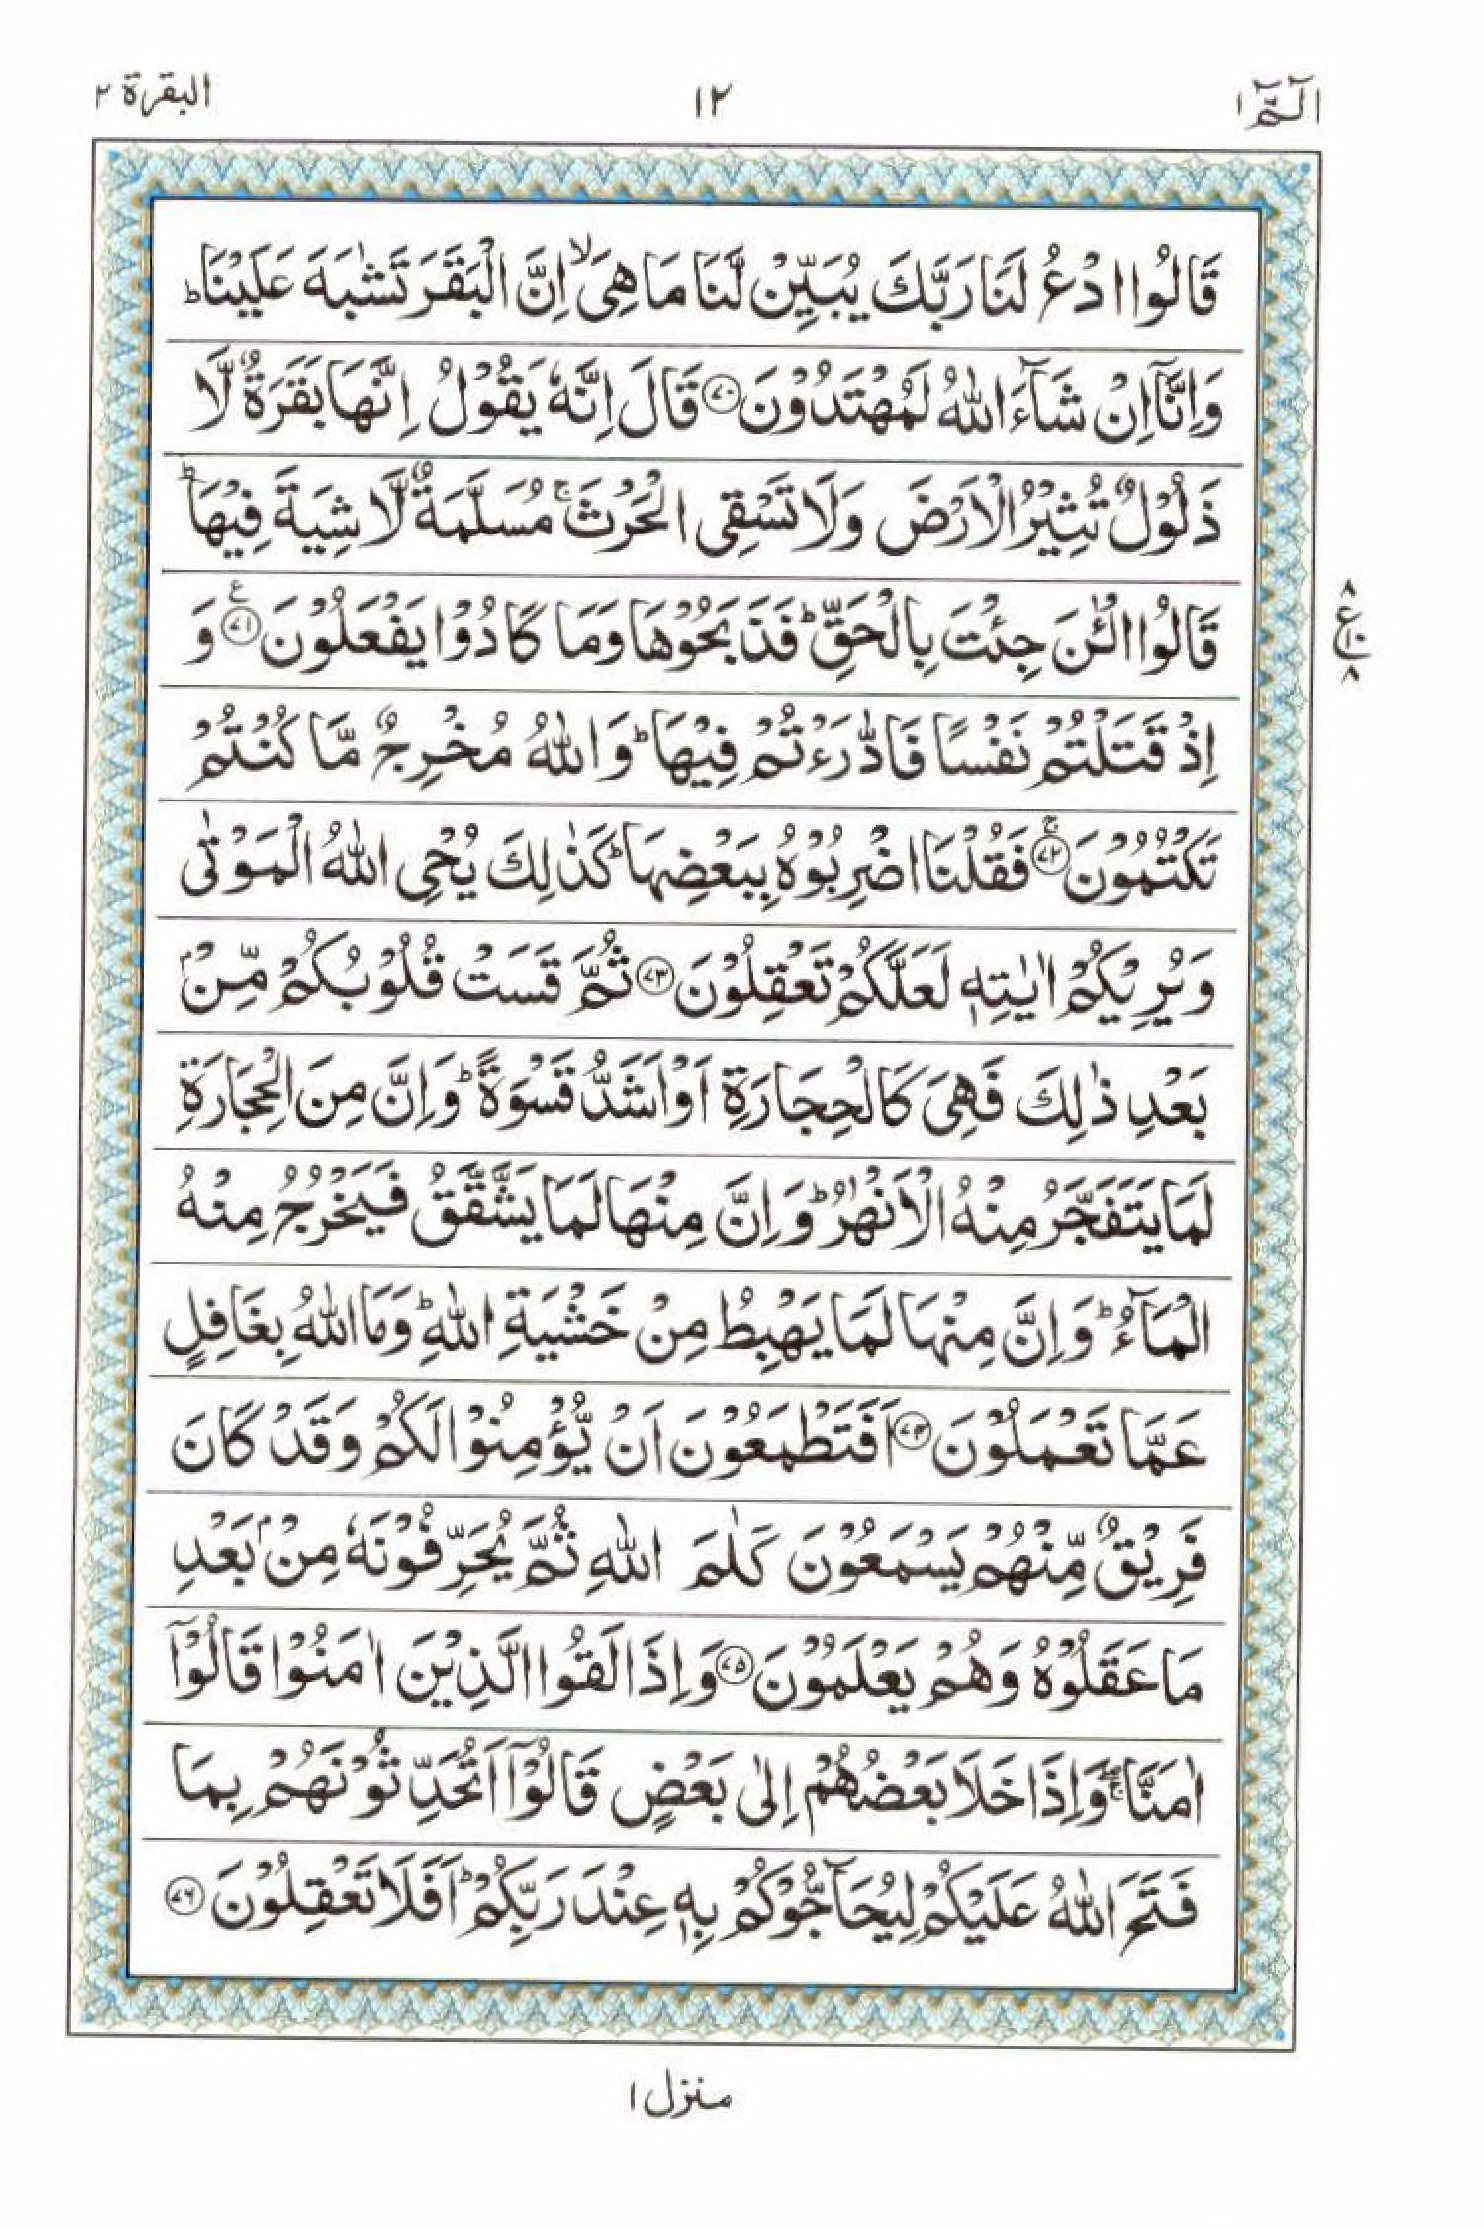 Read 15 Lines Al Quran Part 1 Page No 12, Practice Quran